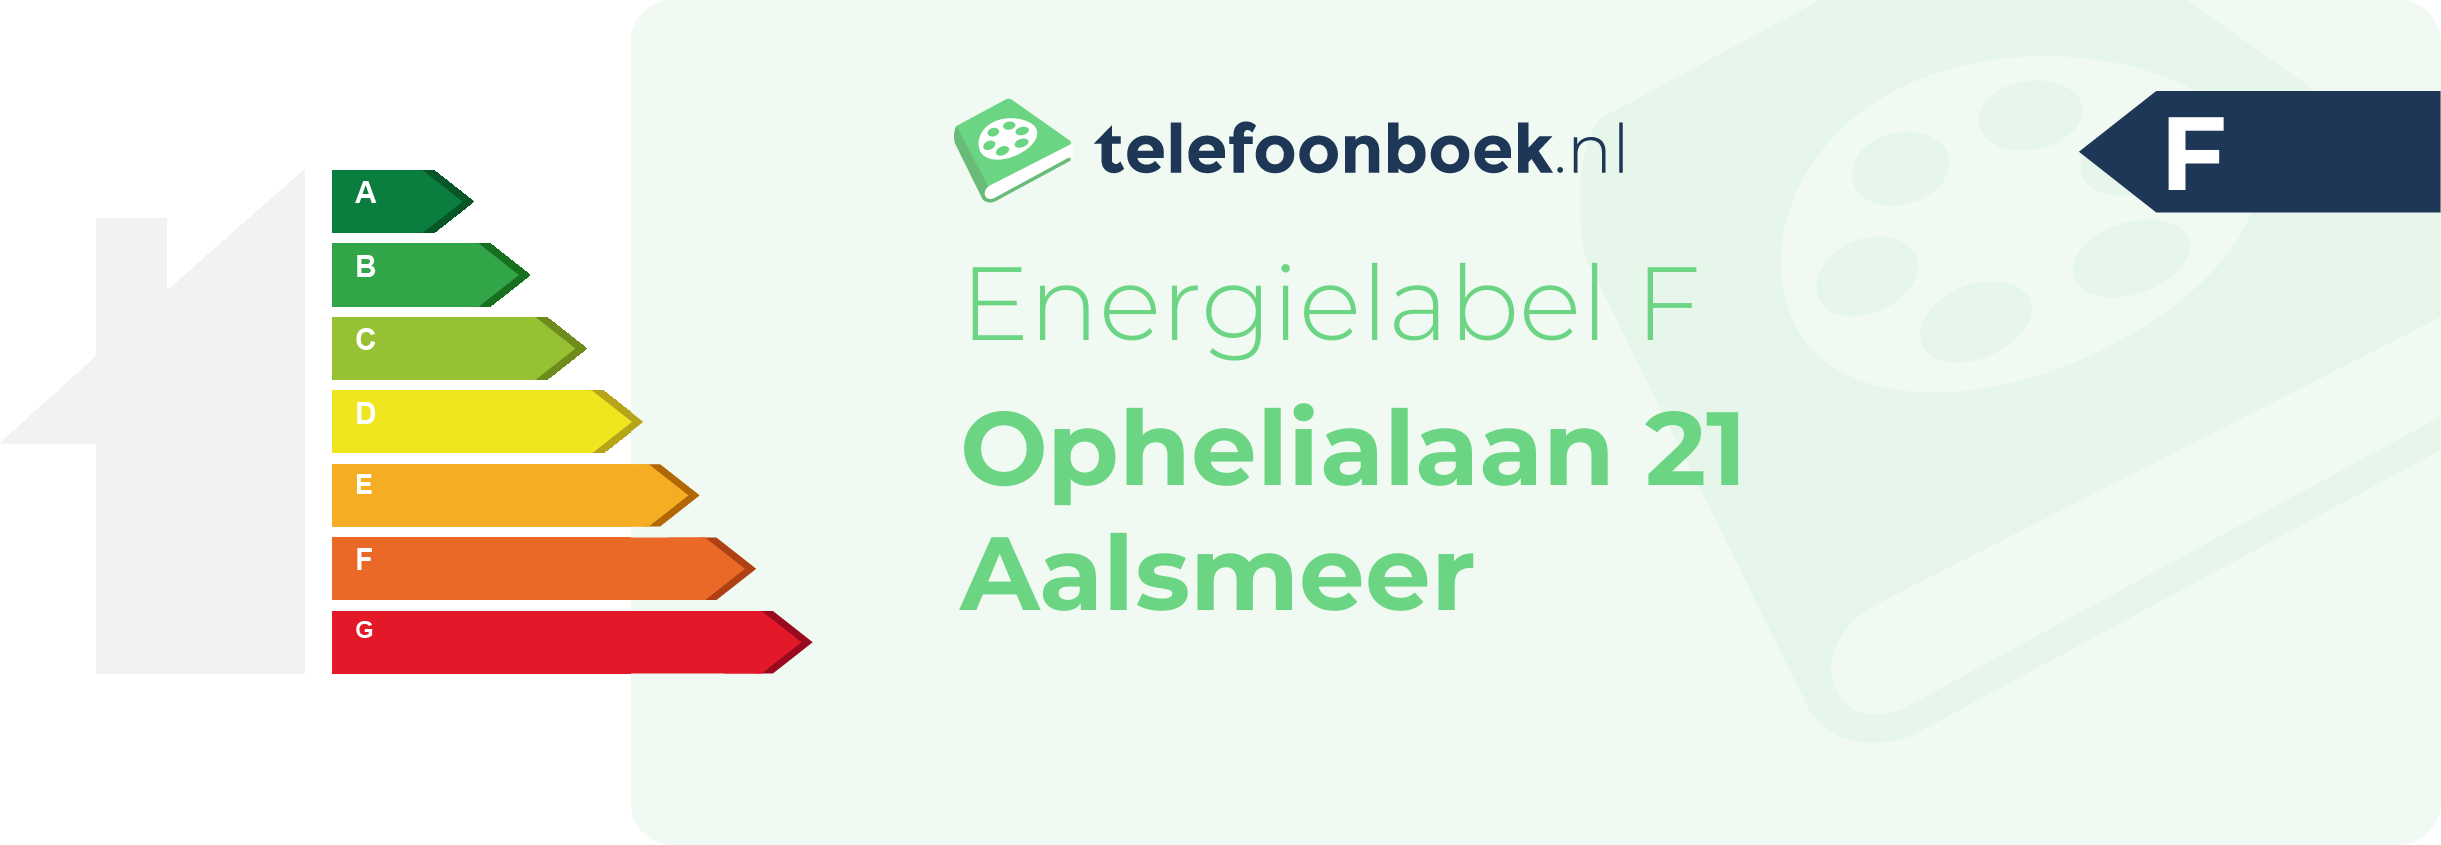 Energielabel Ophelialaan 21 Aalsmeer